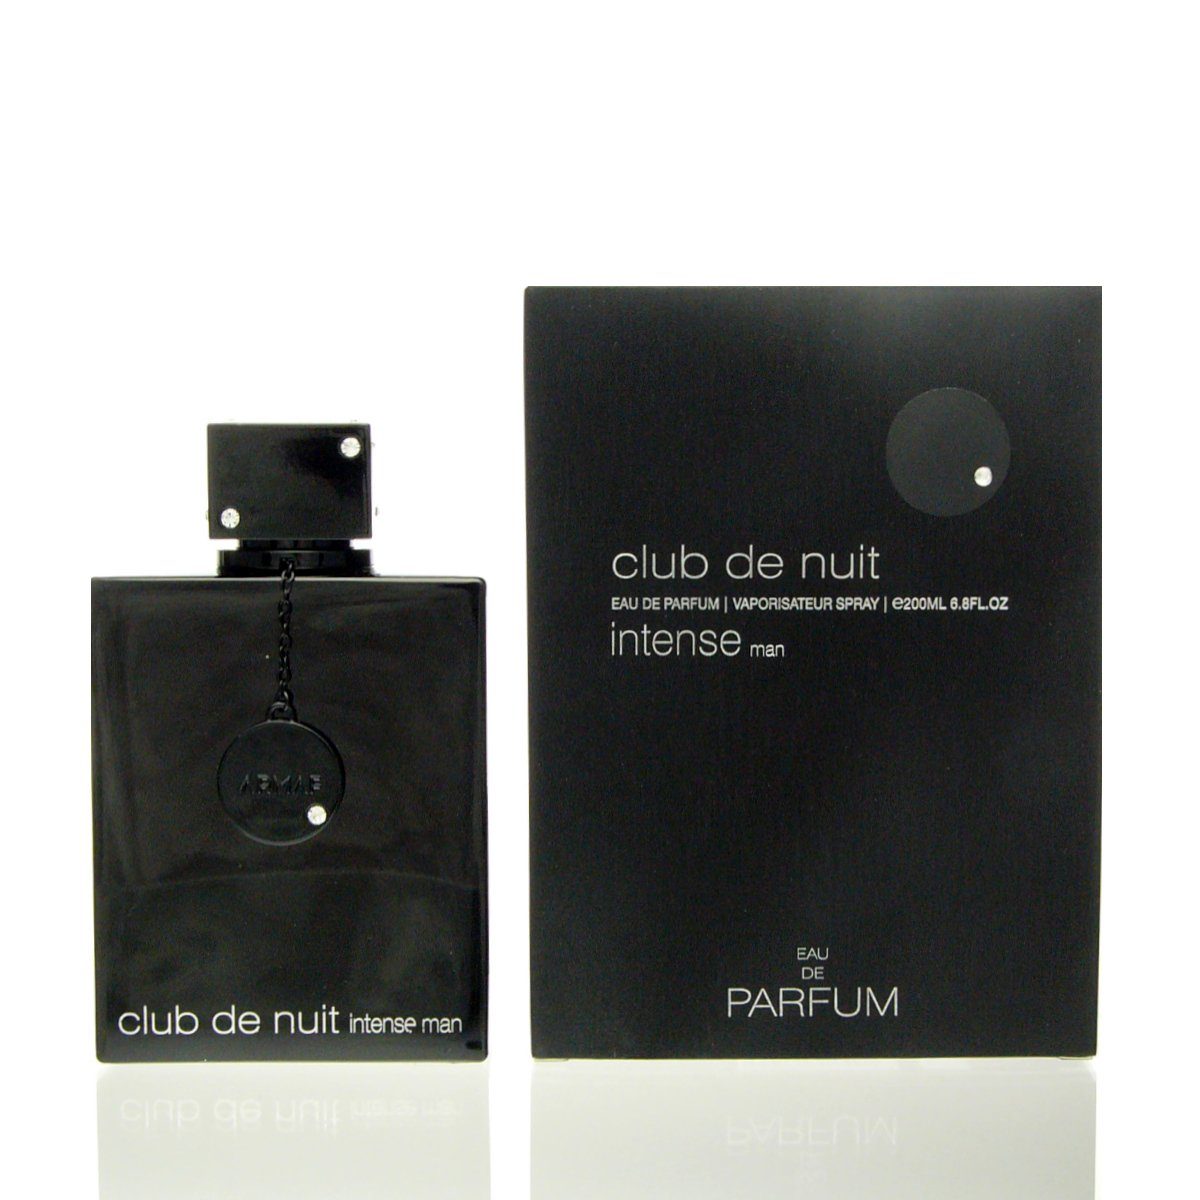 Nuit de Intense Eau 200 Parfum Club armaf Armaf Man ml Parfum de de Eau